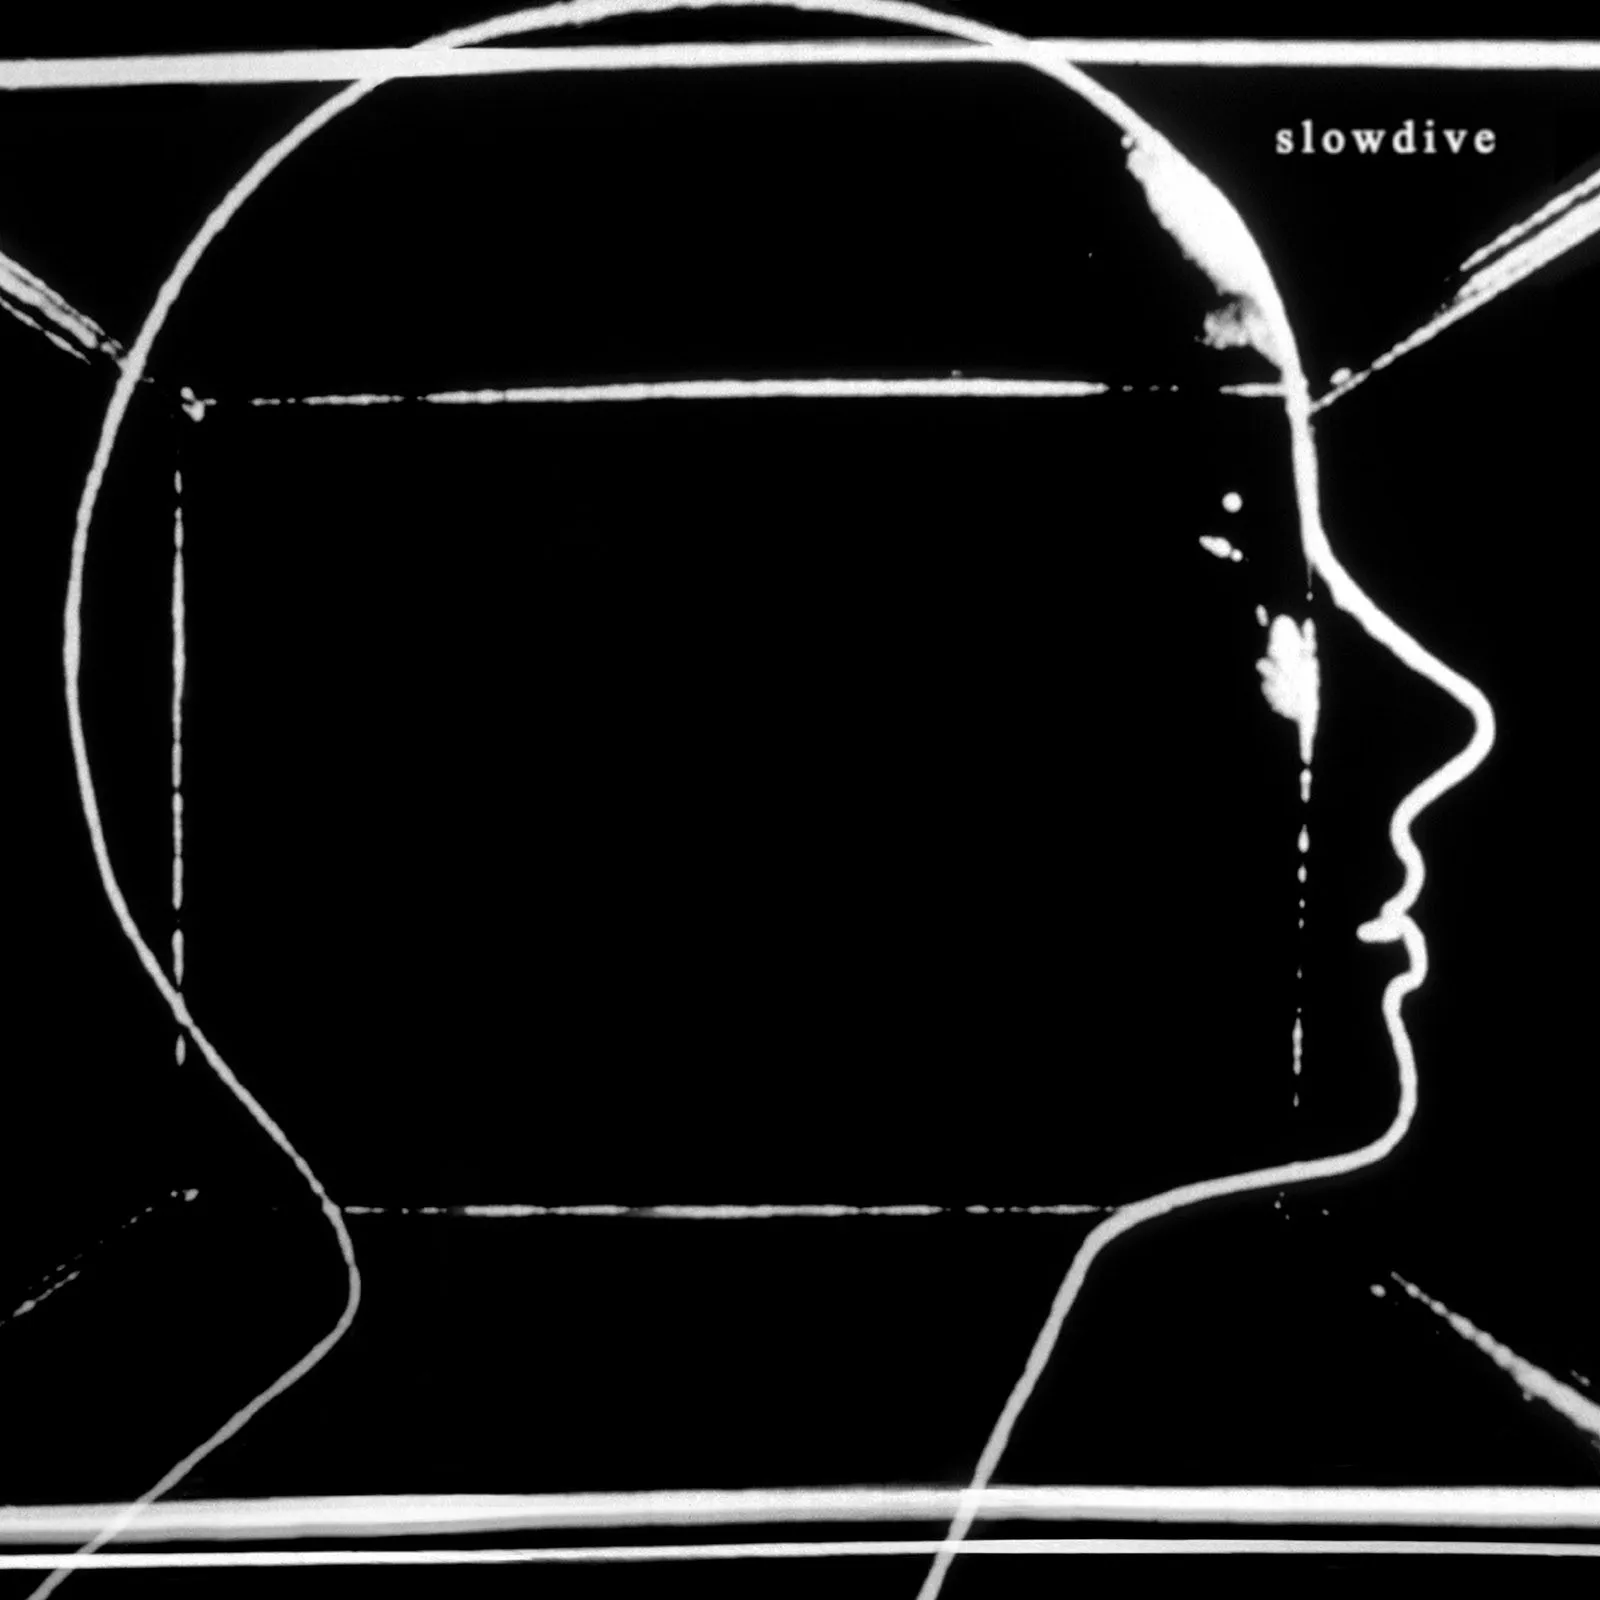 Buy Slowdive via Rough Trade